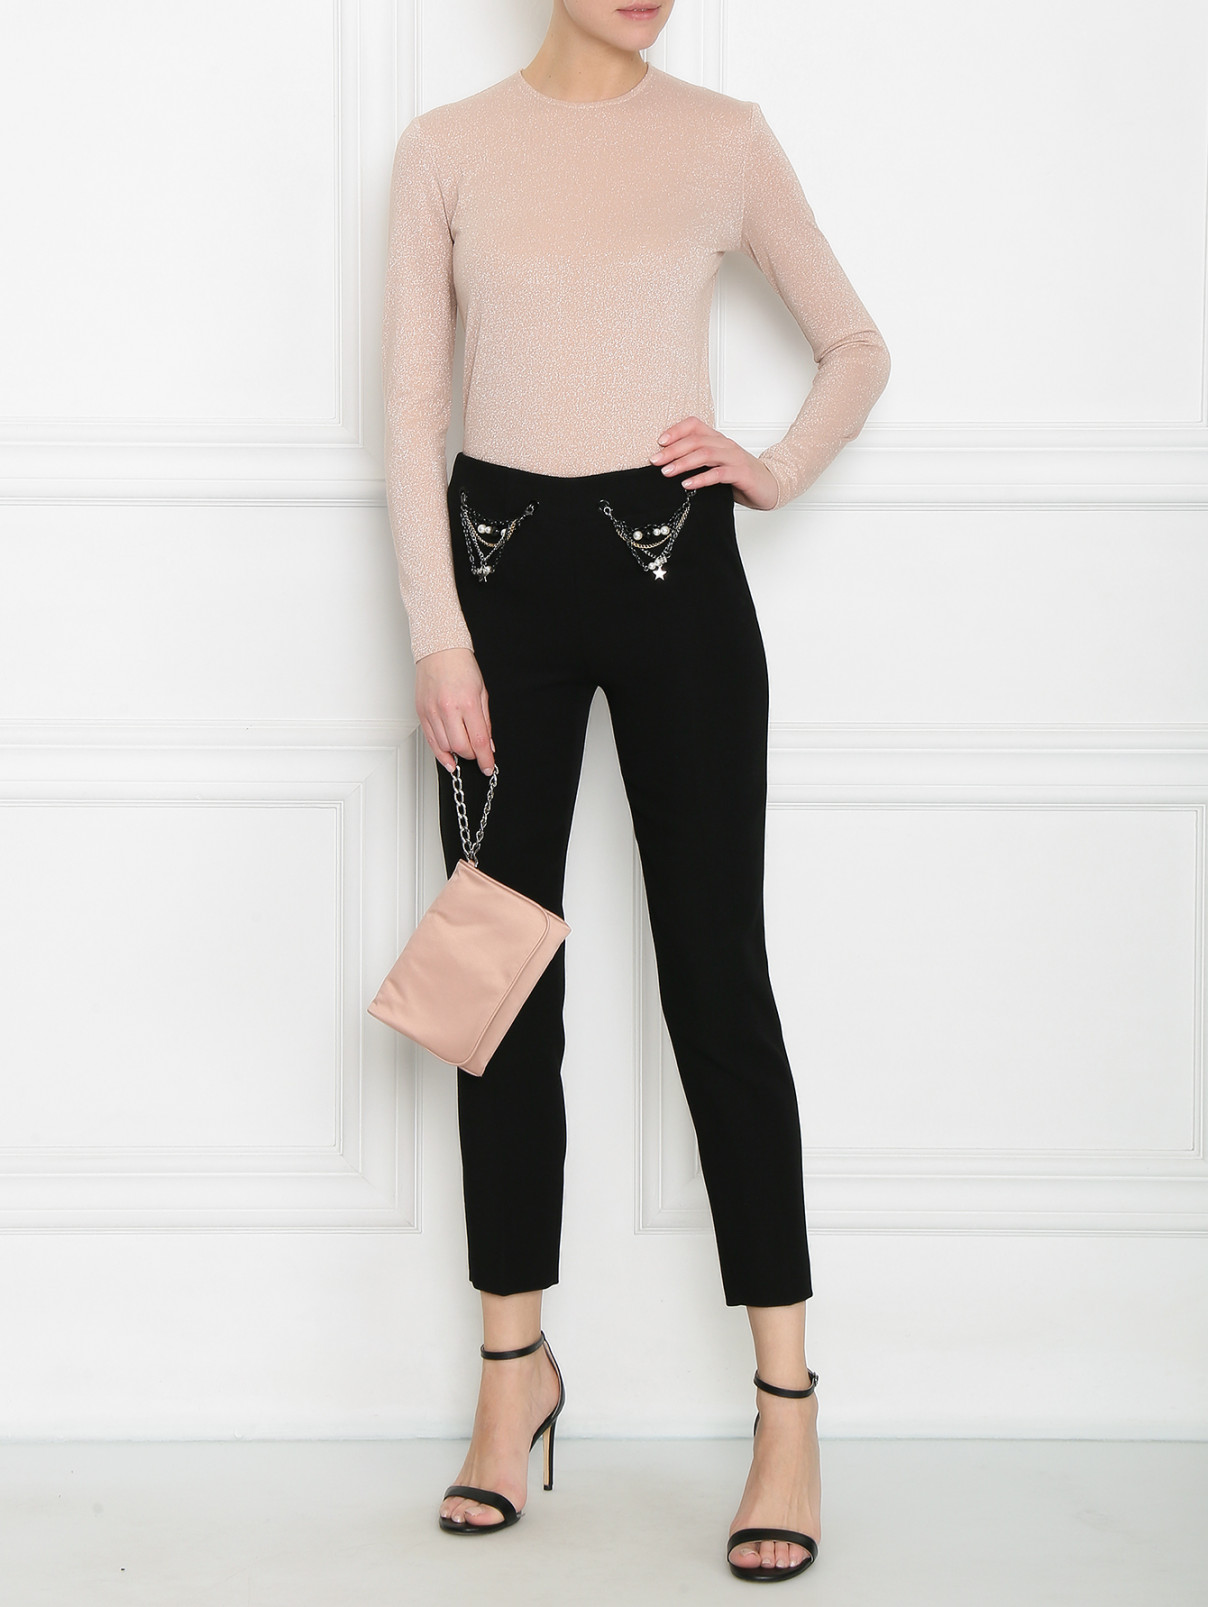 Укороченные узкие брюки из шерсти с декоративными цепочками Moschino Cheap&Chic  –  Модель Общий вид  – Цвет:  Черный